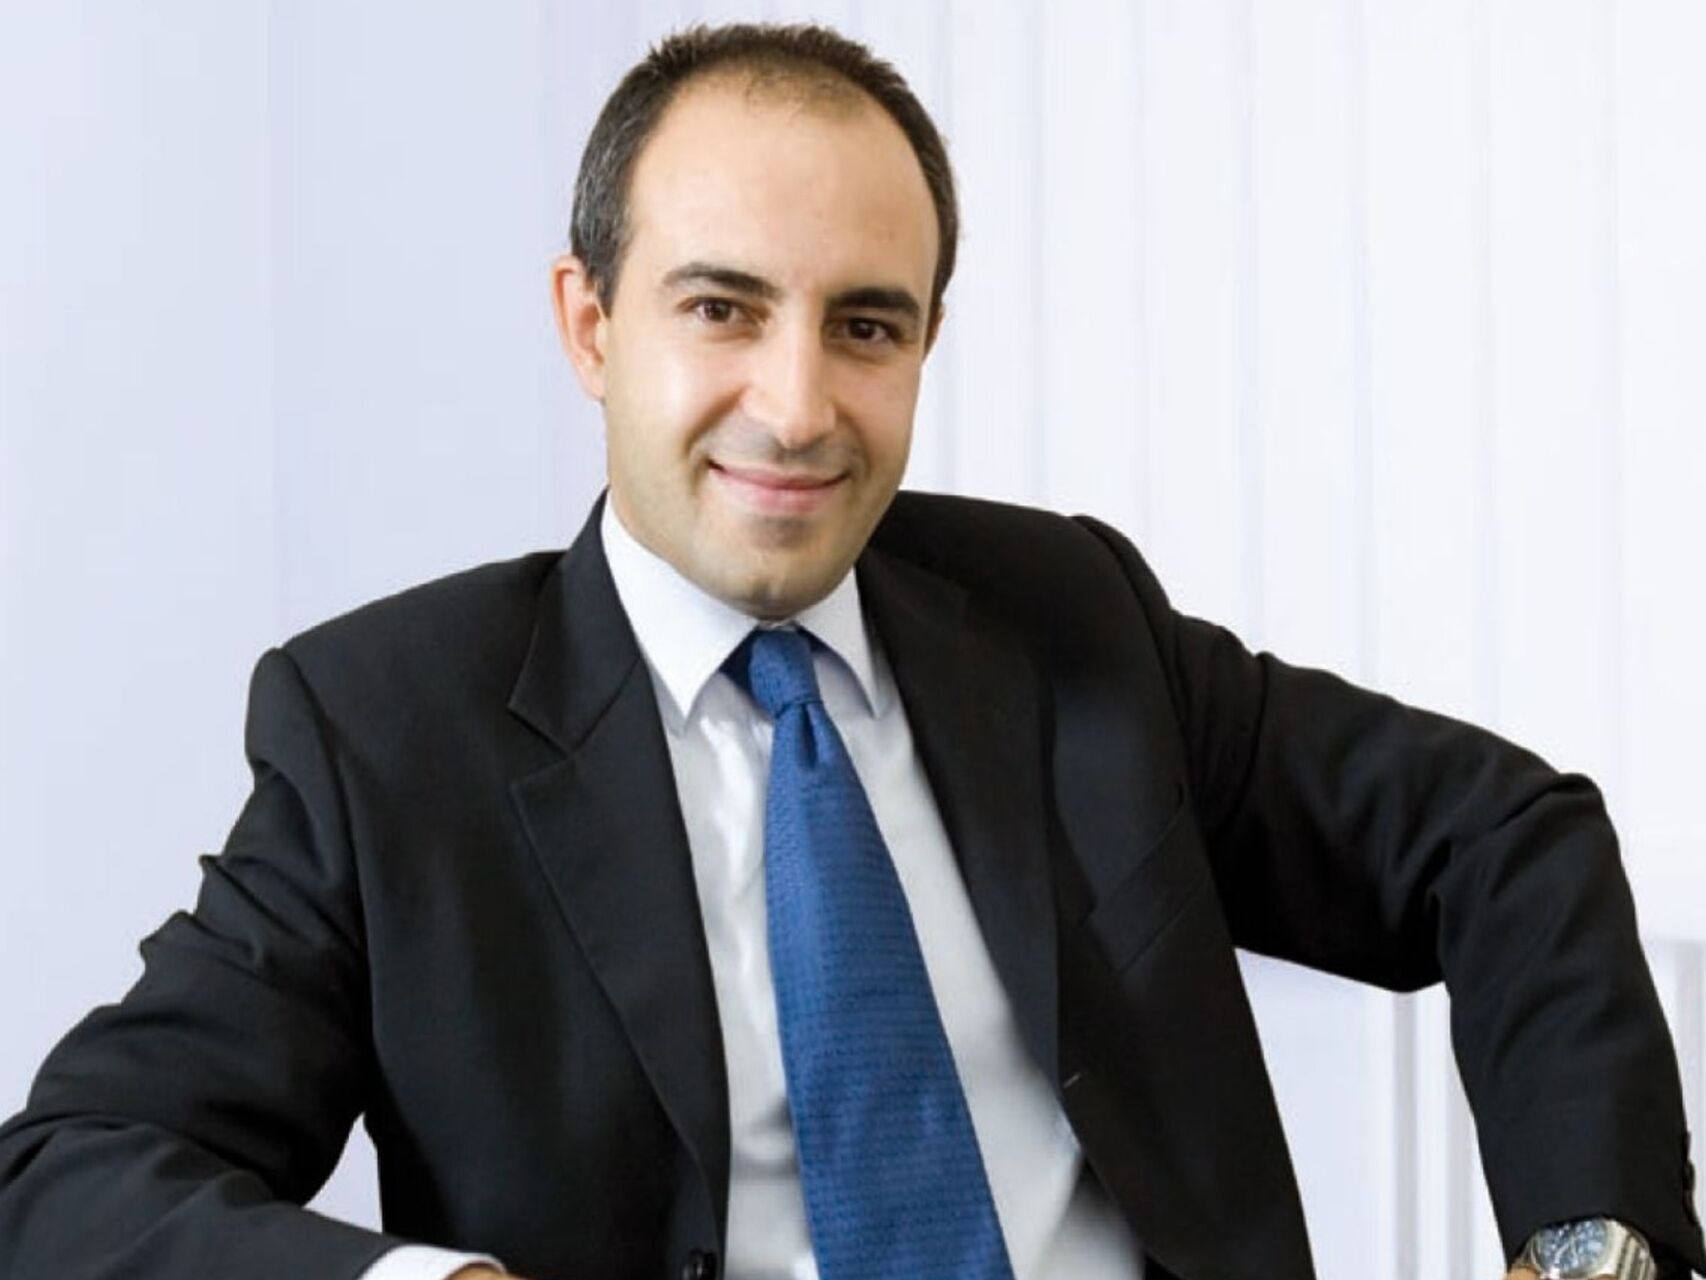 Fabio Pagano este CEO al SitoVivo